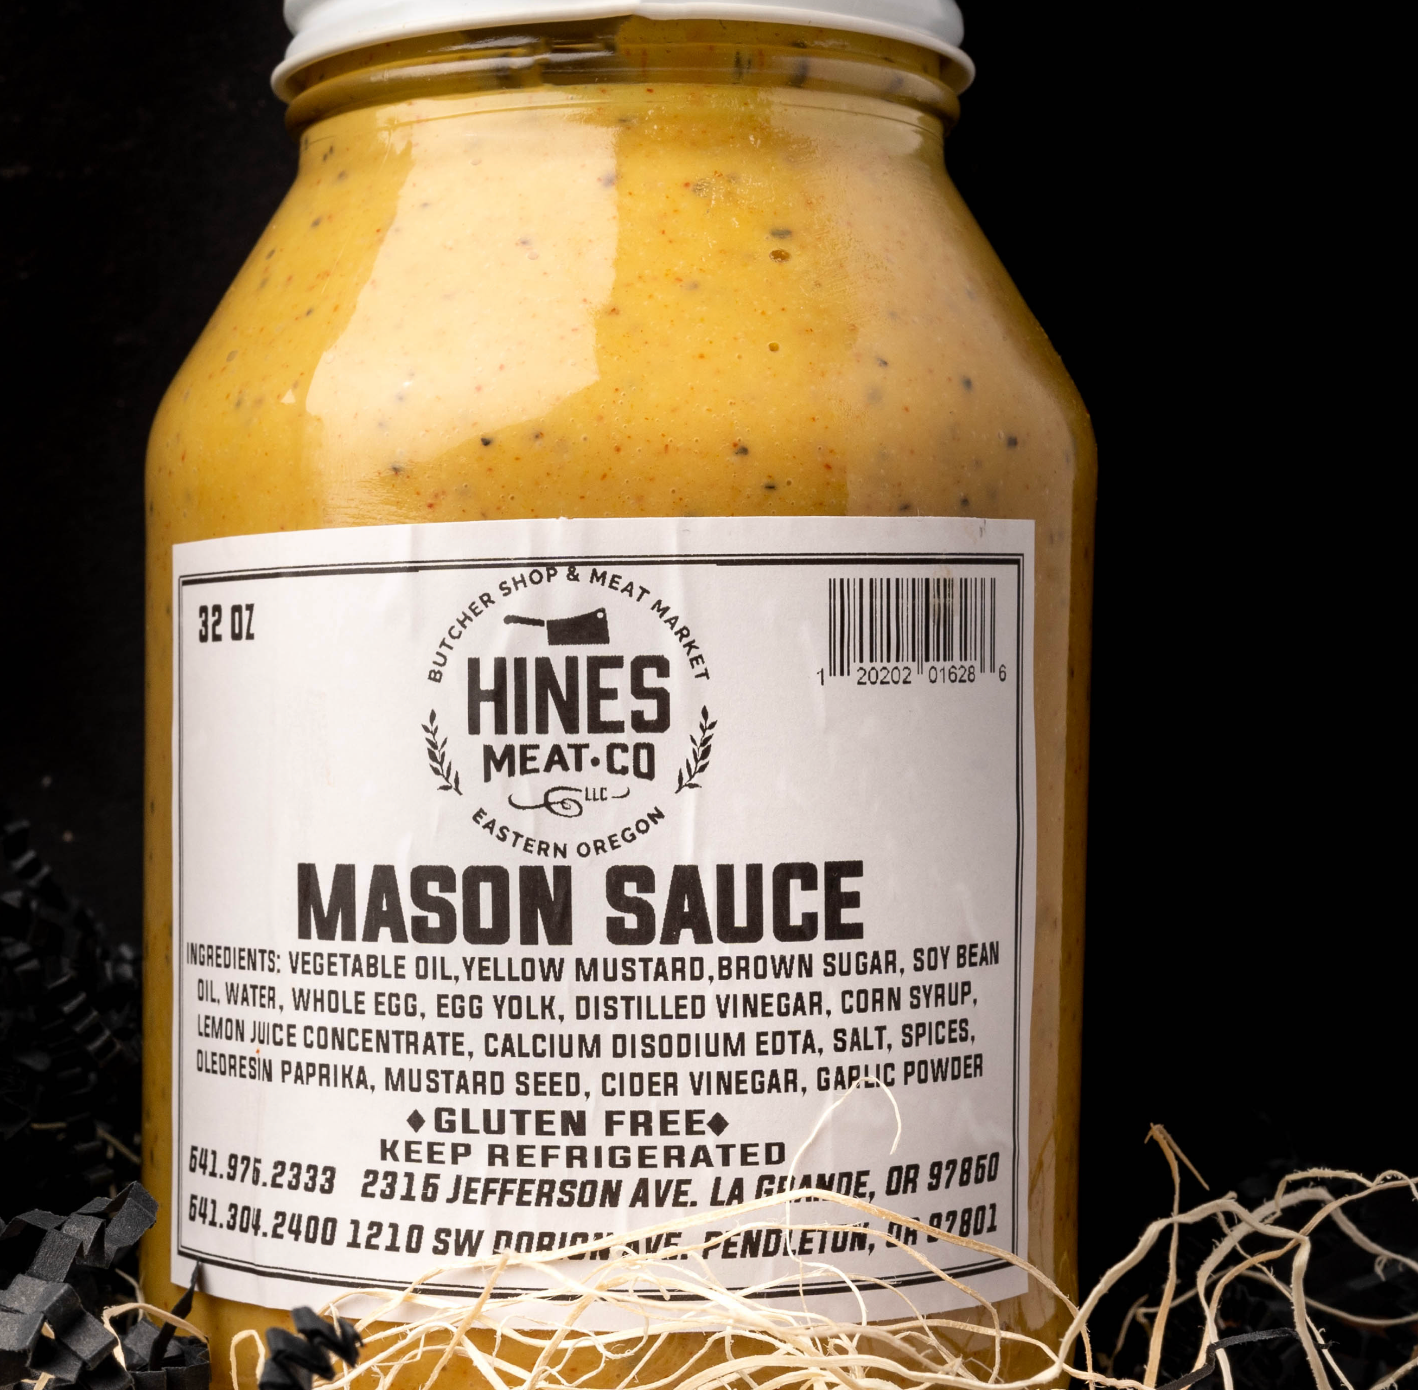 Mason Sauce